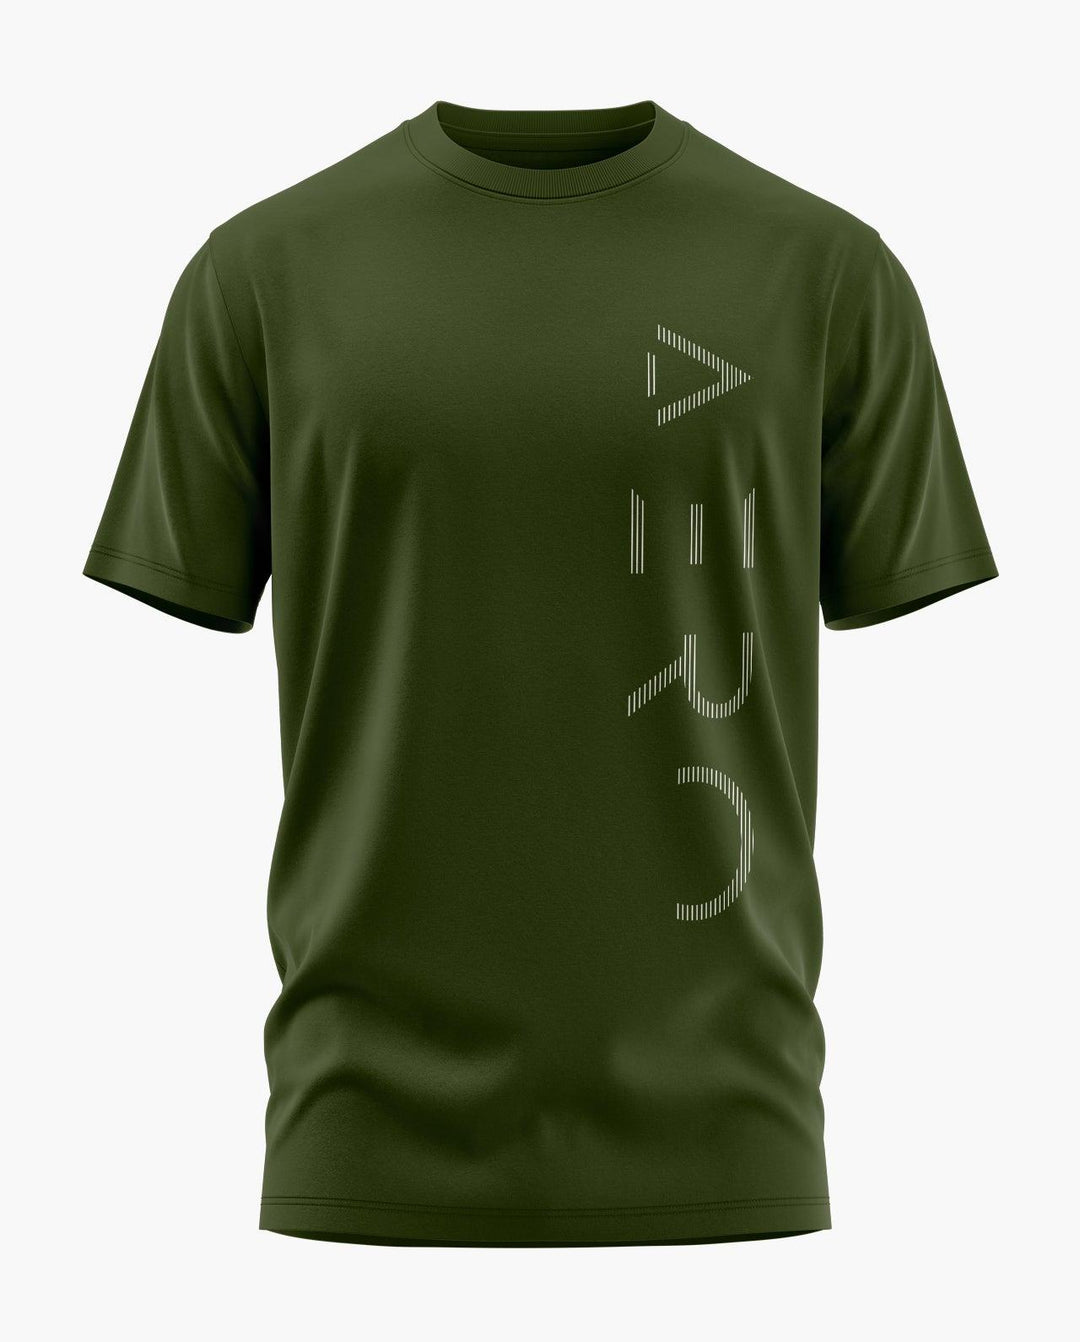 AERO MINIMAL T-Shirt - Aero Armour